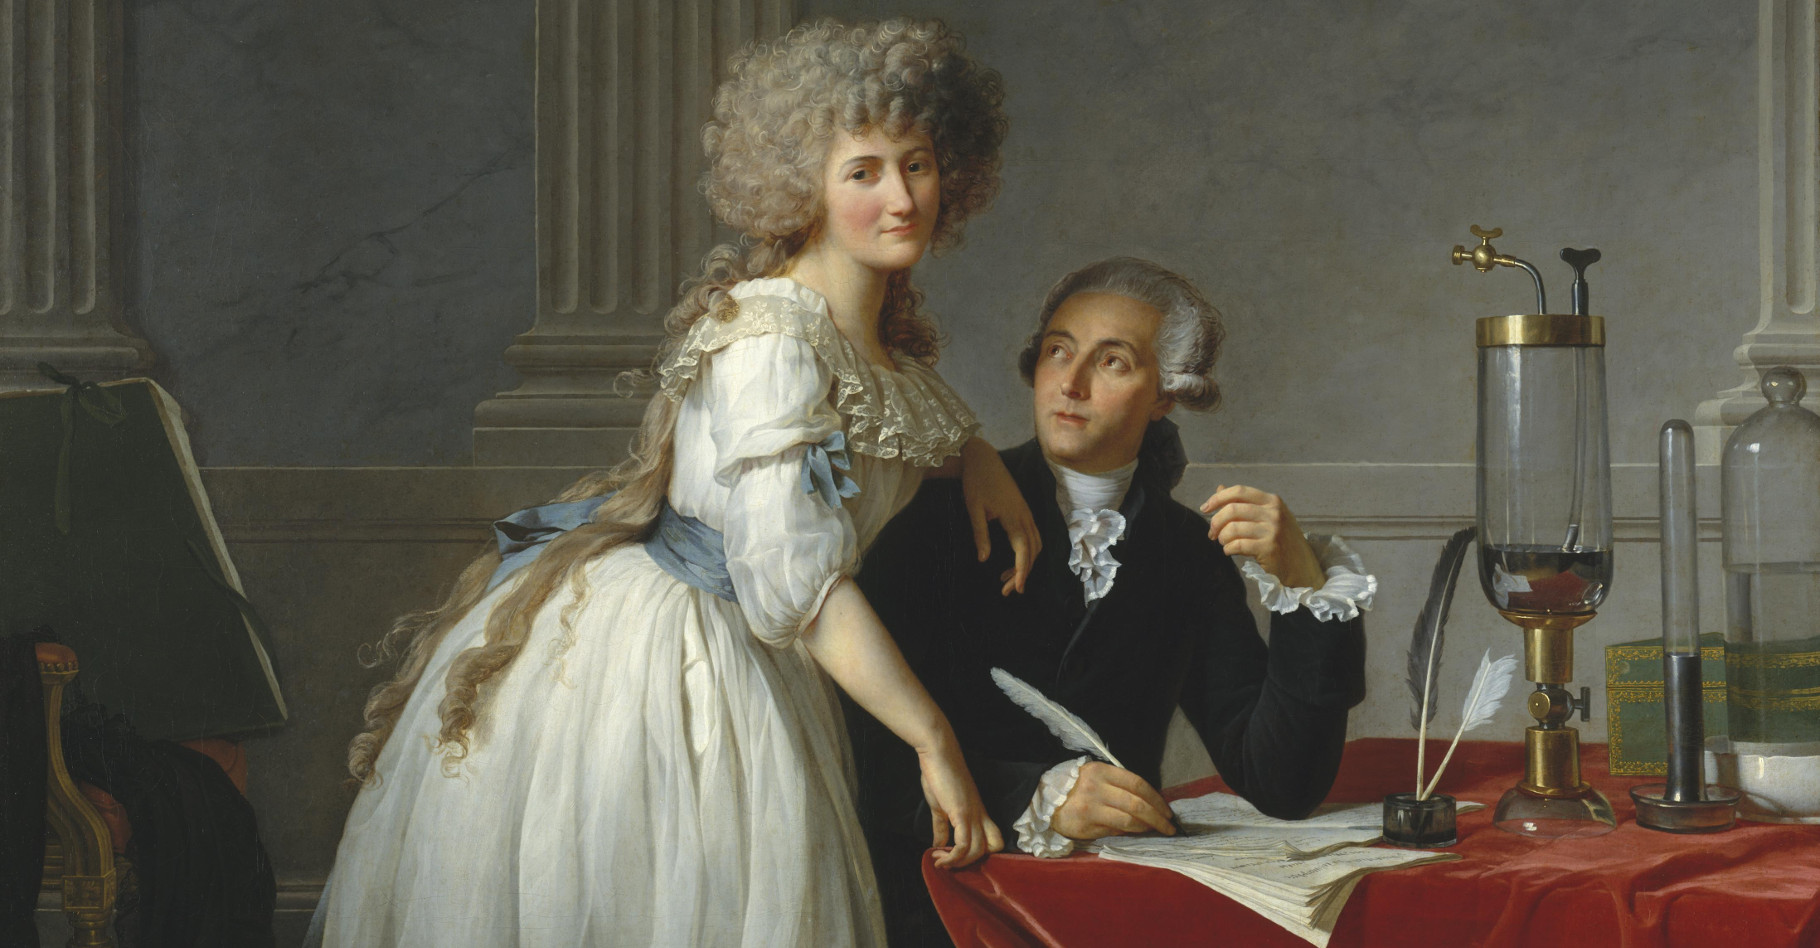 Antoine Lavoisier est considéré comme le père de la chimie moderne. Il est représenté accompagné de sa femme, Marie-Anne Lavoisier, sur ce portrait réalisé par Jacques-Louis David en 1788. © Wikimedia Commons, DP